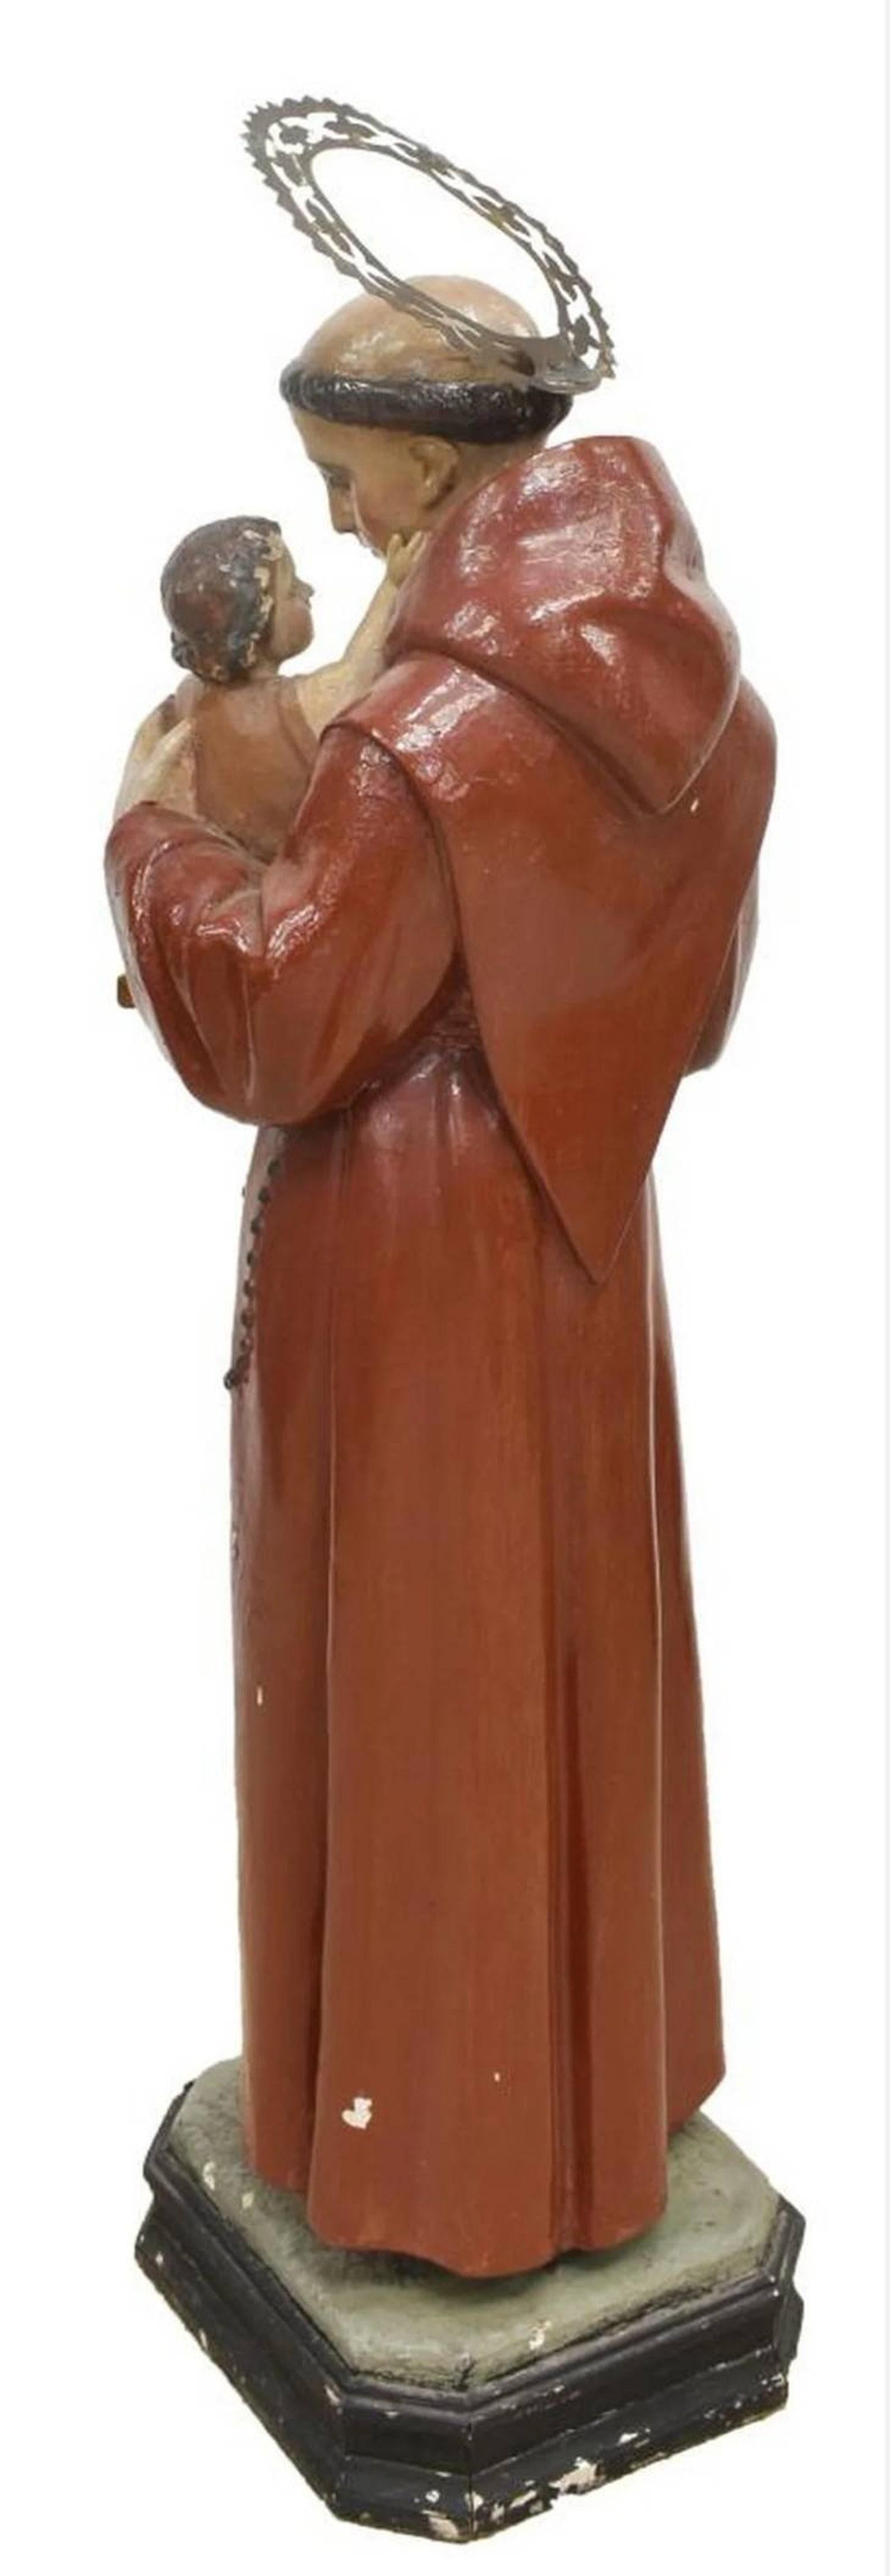 Magnifique figurine d'autel d'église catholique ancienne en bois sculpté et plâtre. La grande sculpture représentant Saint Antoine de Padua, datant de la fin du 19ème / début du 20ème siècle. Représenté en habit franciscain, avec une auréole en